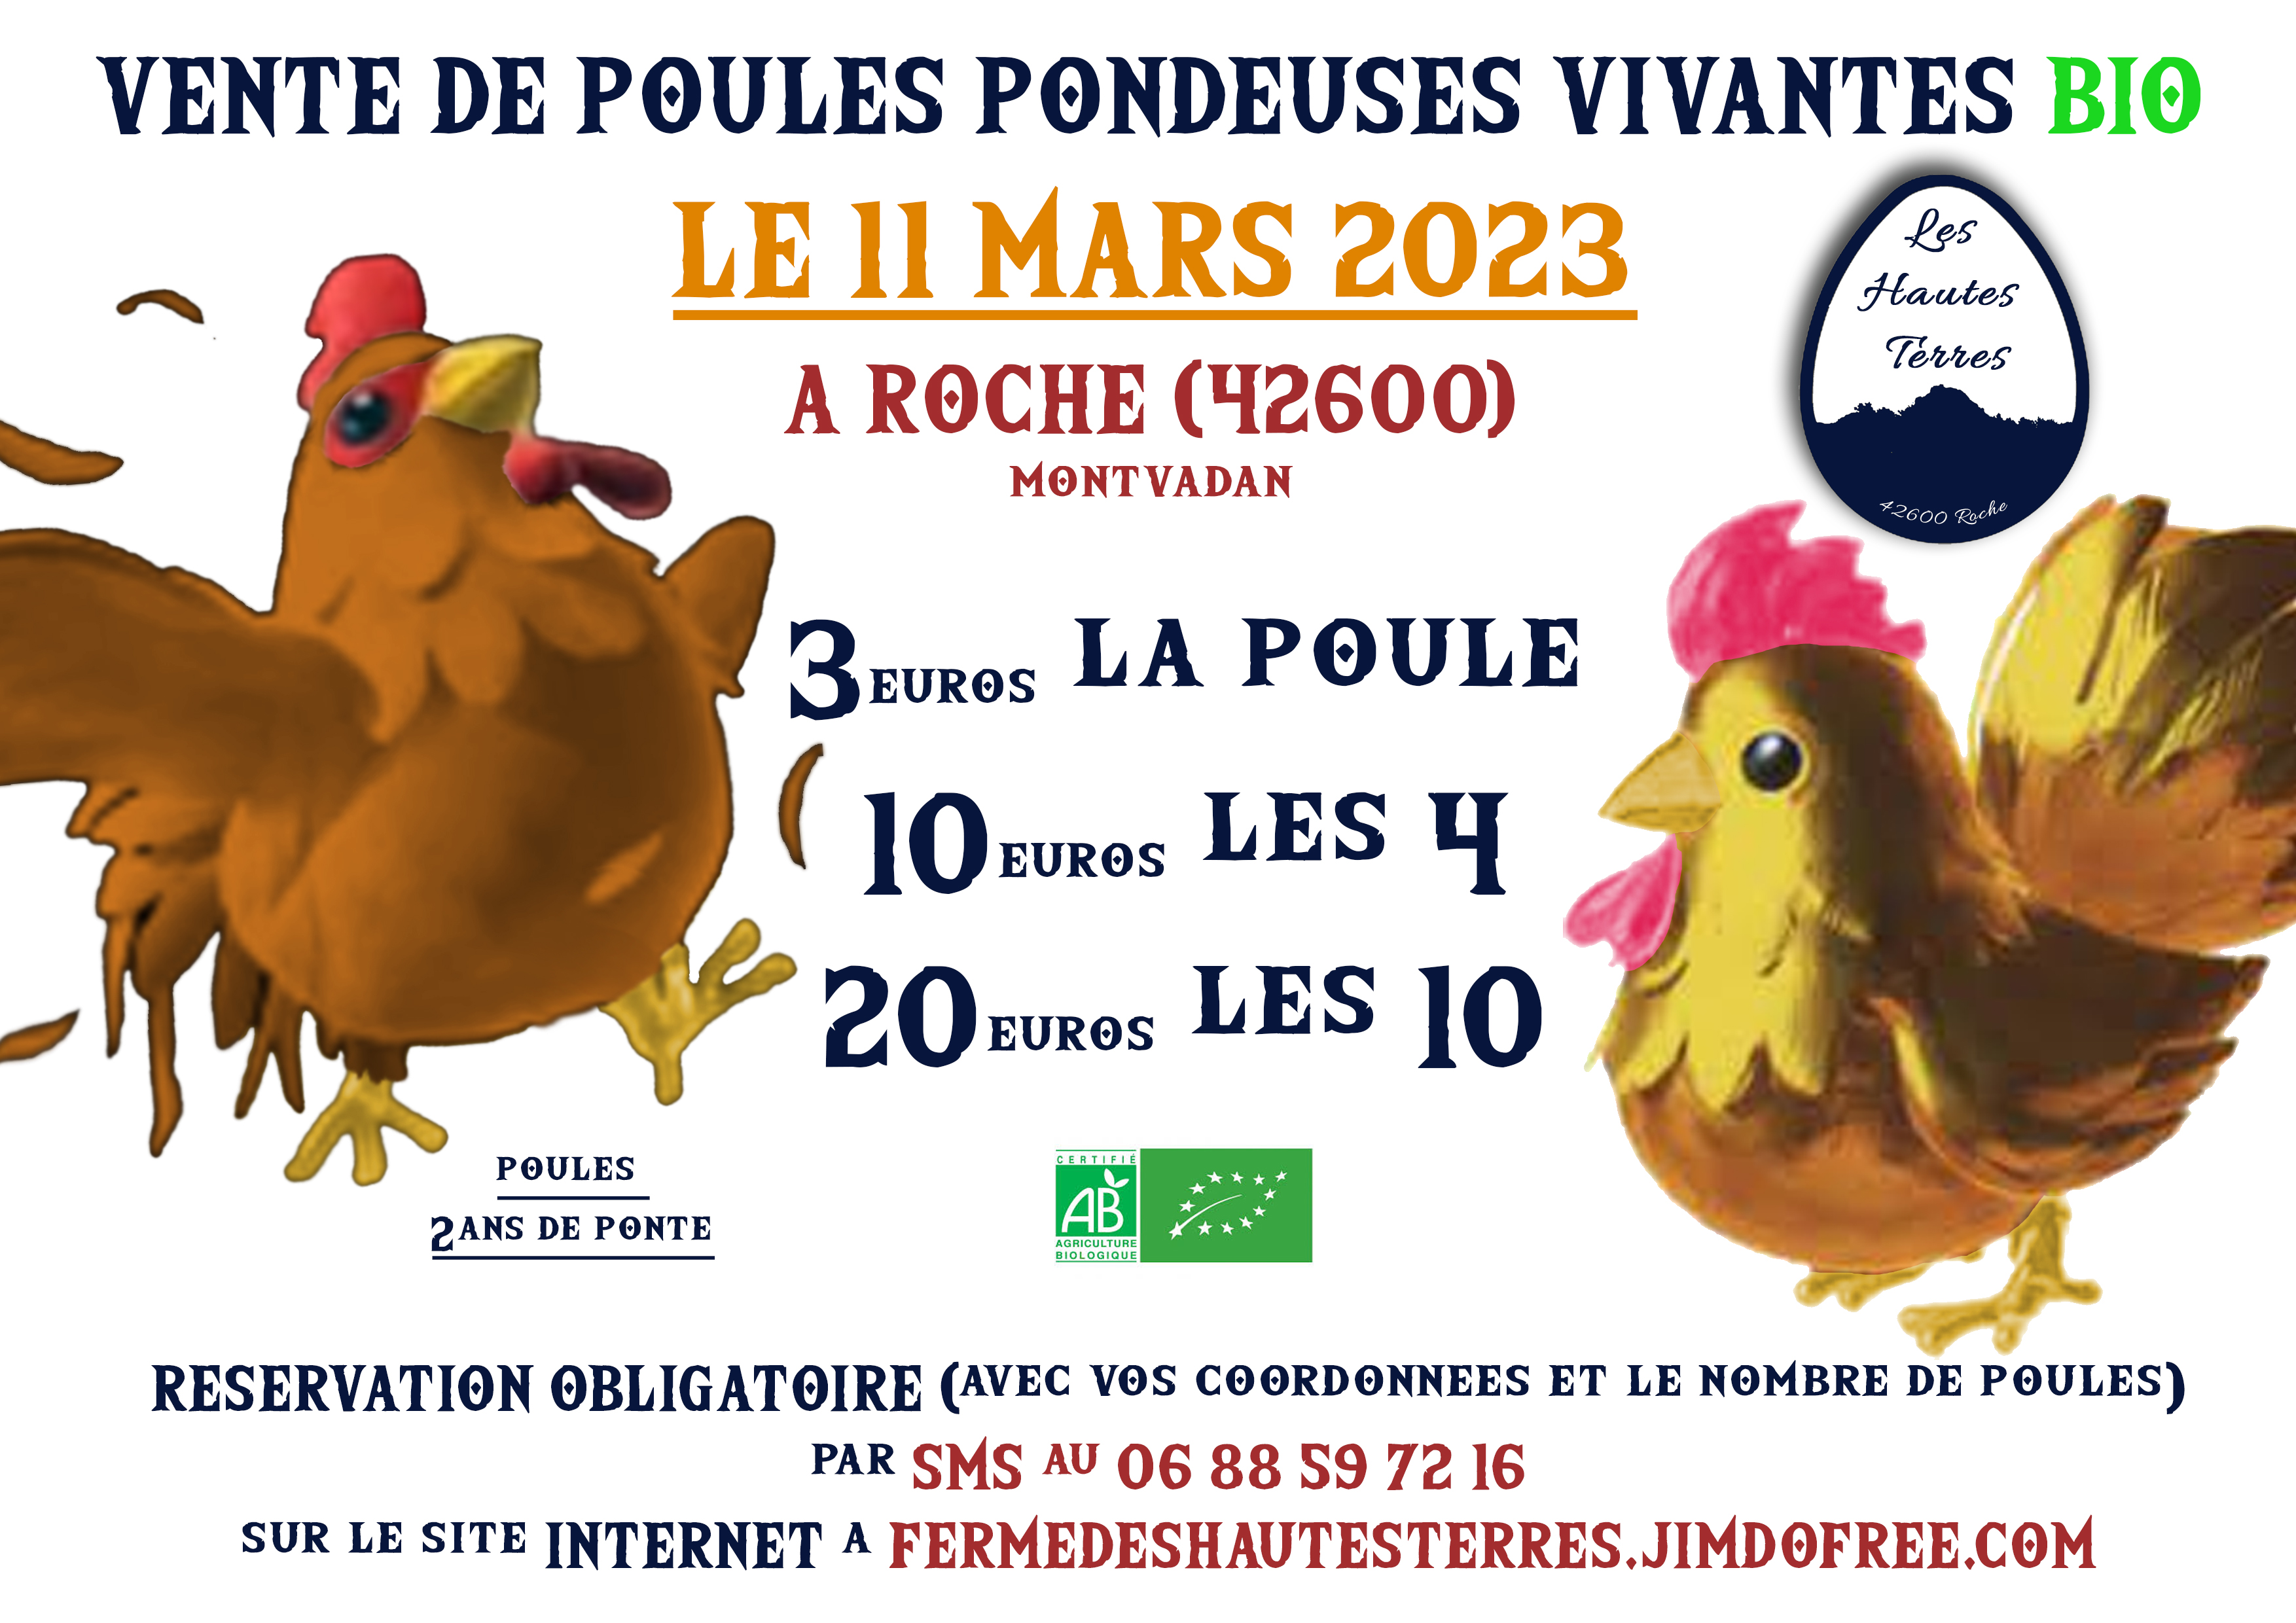 vente poules vivantes2023-1.jpg